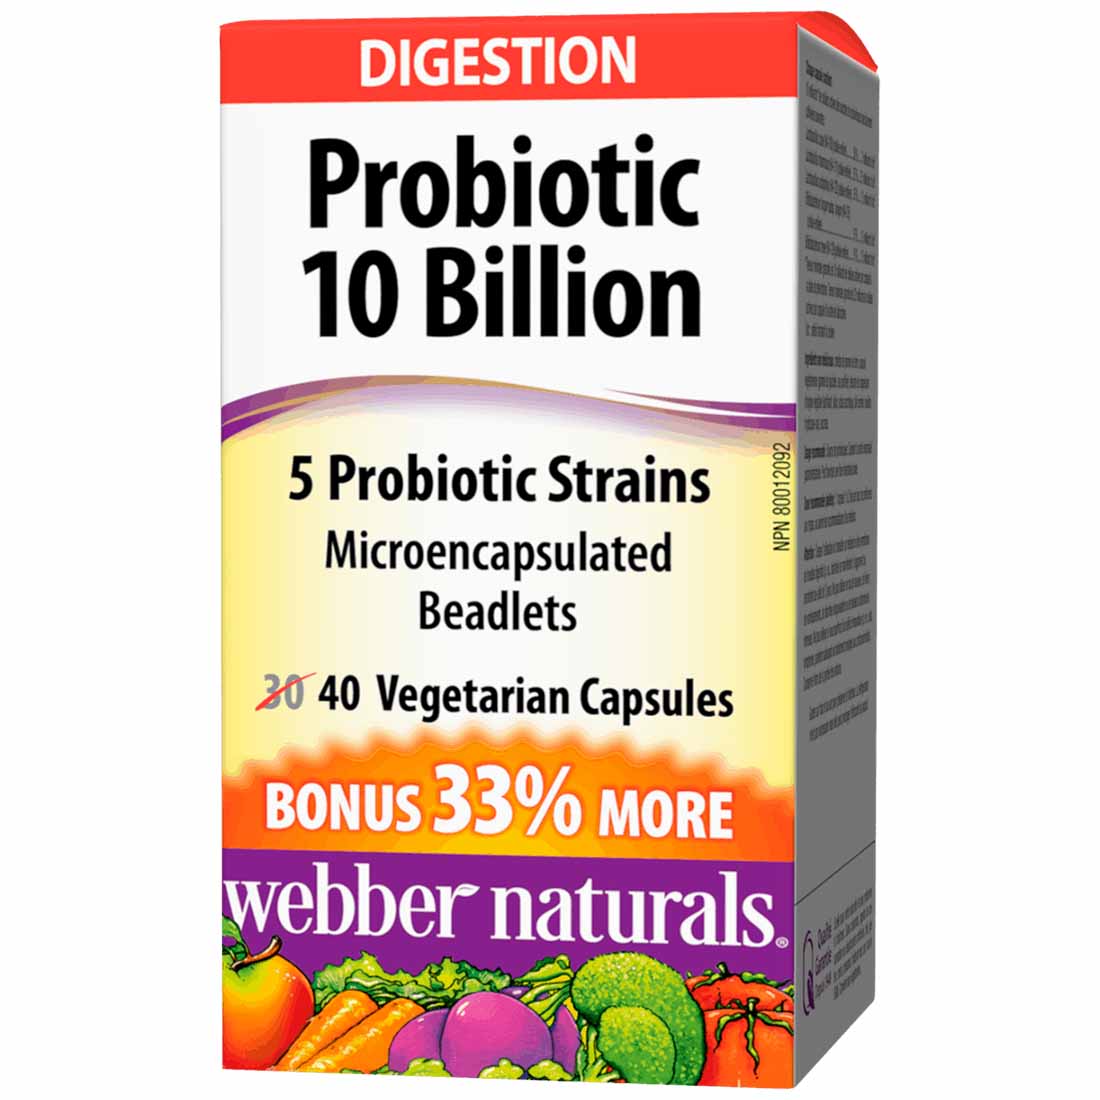 Webber Naturals Probiotic, Double Strength, 10 Billion Active Cells, 5 Probiotic Strains, BONUS! 33% MORE, 30+10 Capsules